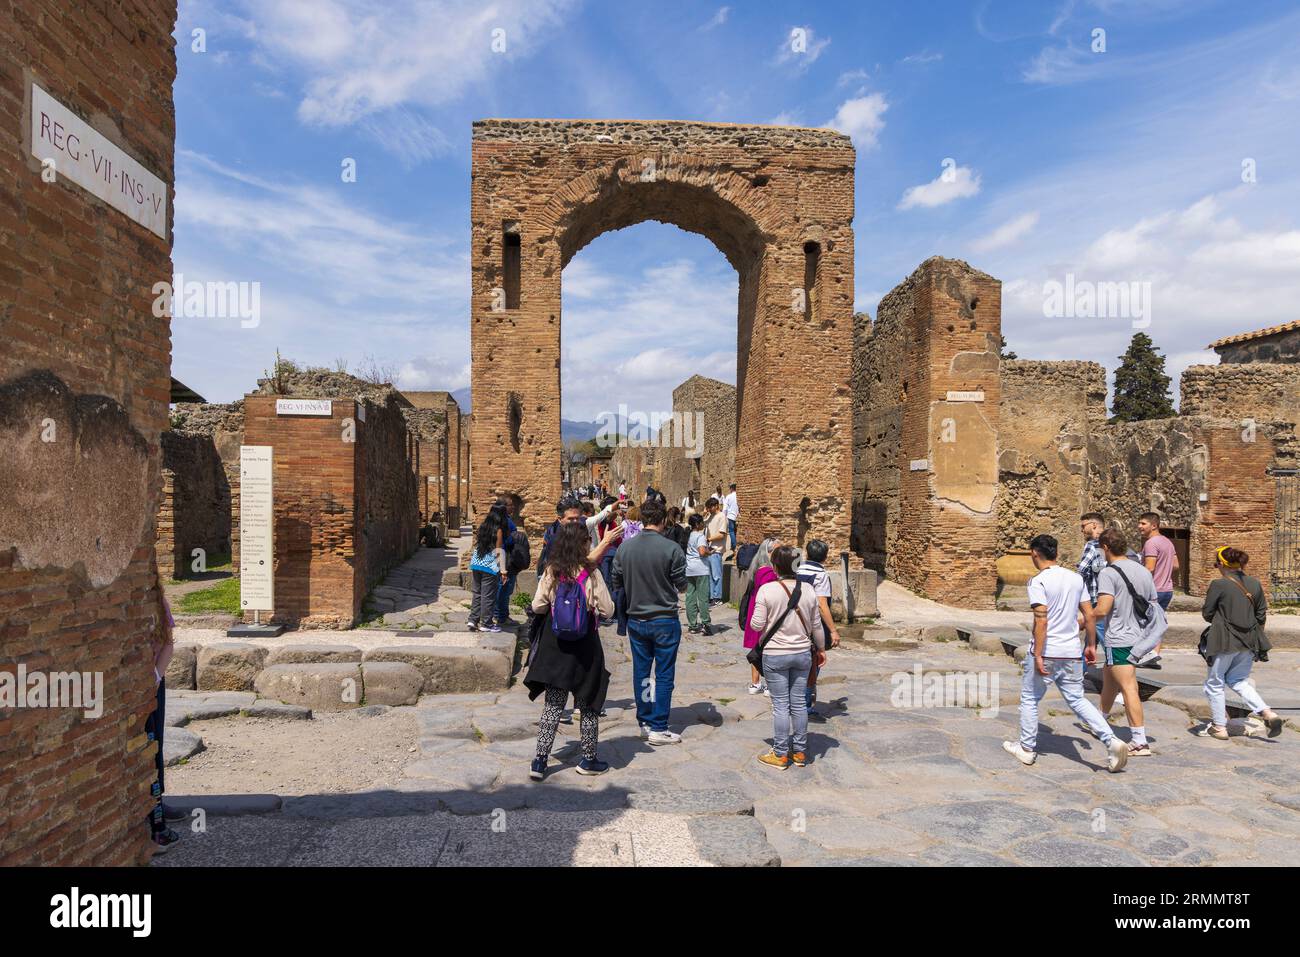 Archäologische Stätte Pompeji, Kampanien, Italien. Der Bogen von Caligula ist der heutige Name. Er wurde mehrfach als Tiberius-Bogen, der Tiberius-Bogen, bezeichnet Stockfoto